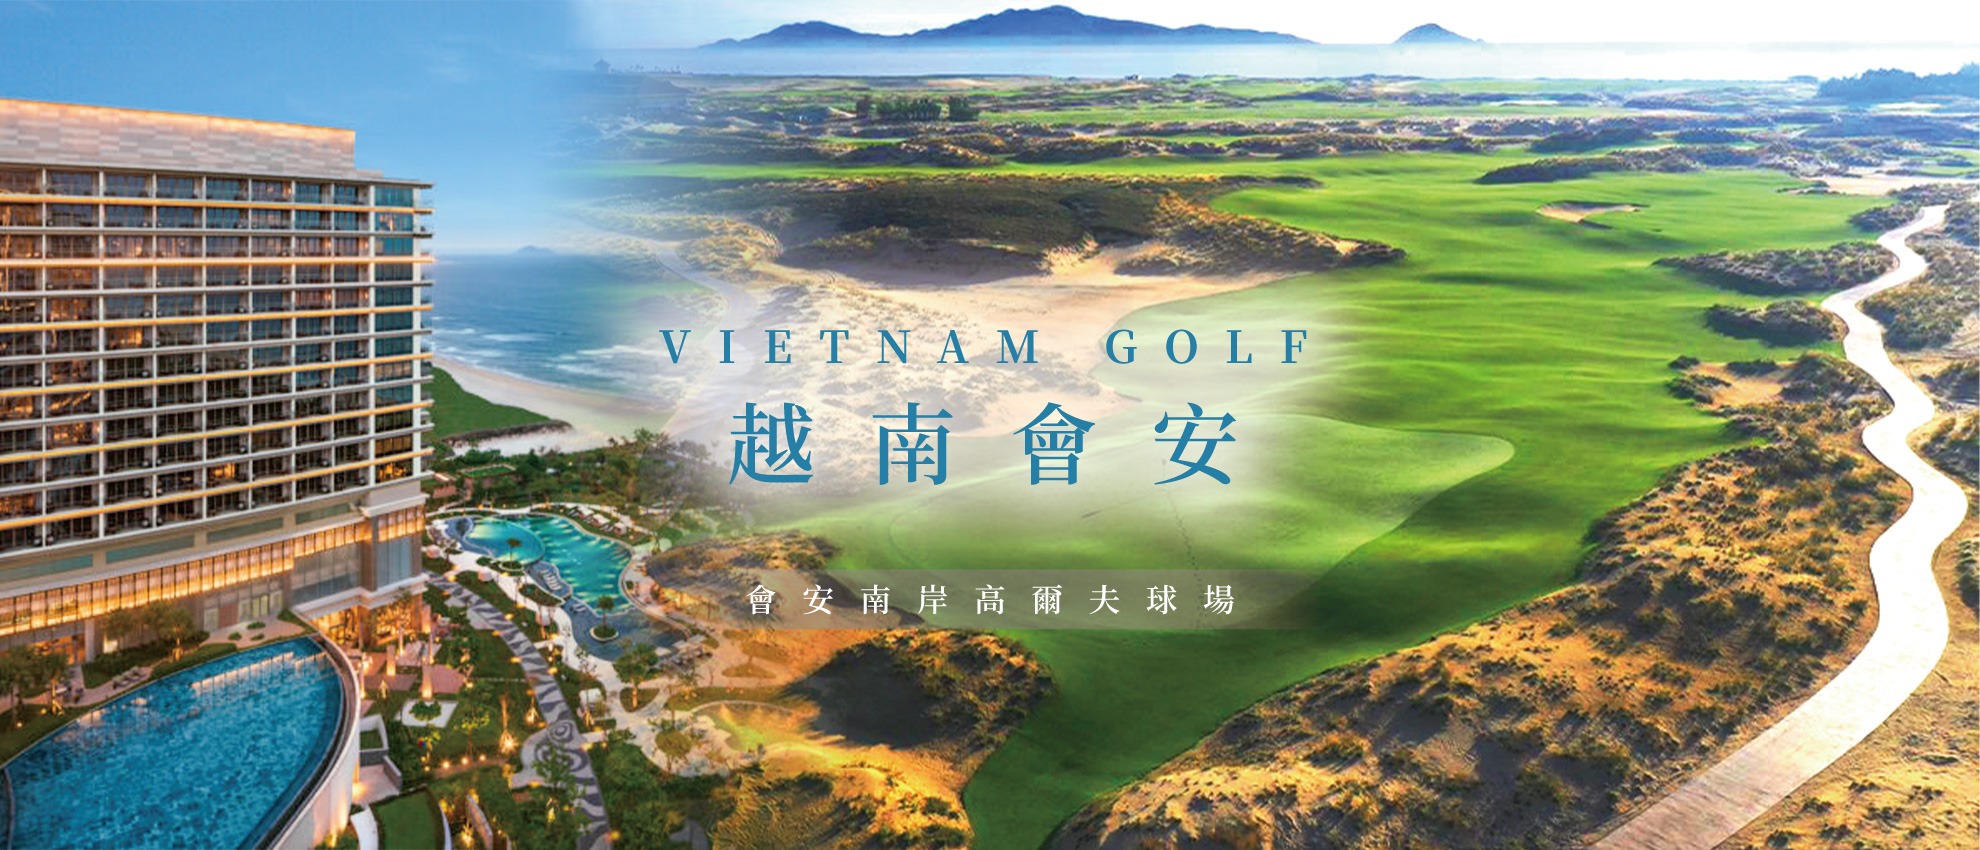 鷹飛國際旅行社 Infinity Tour | 越南峴港 | 會安渡假高爾夫之旅